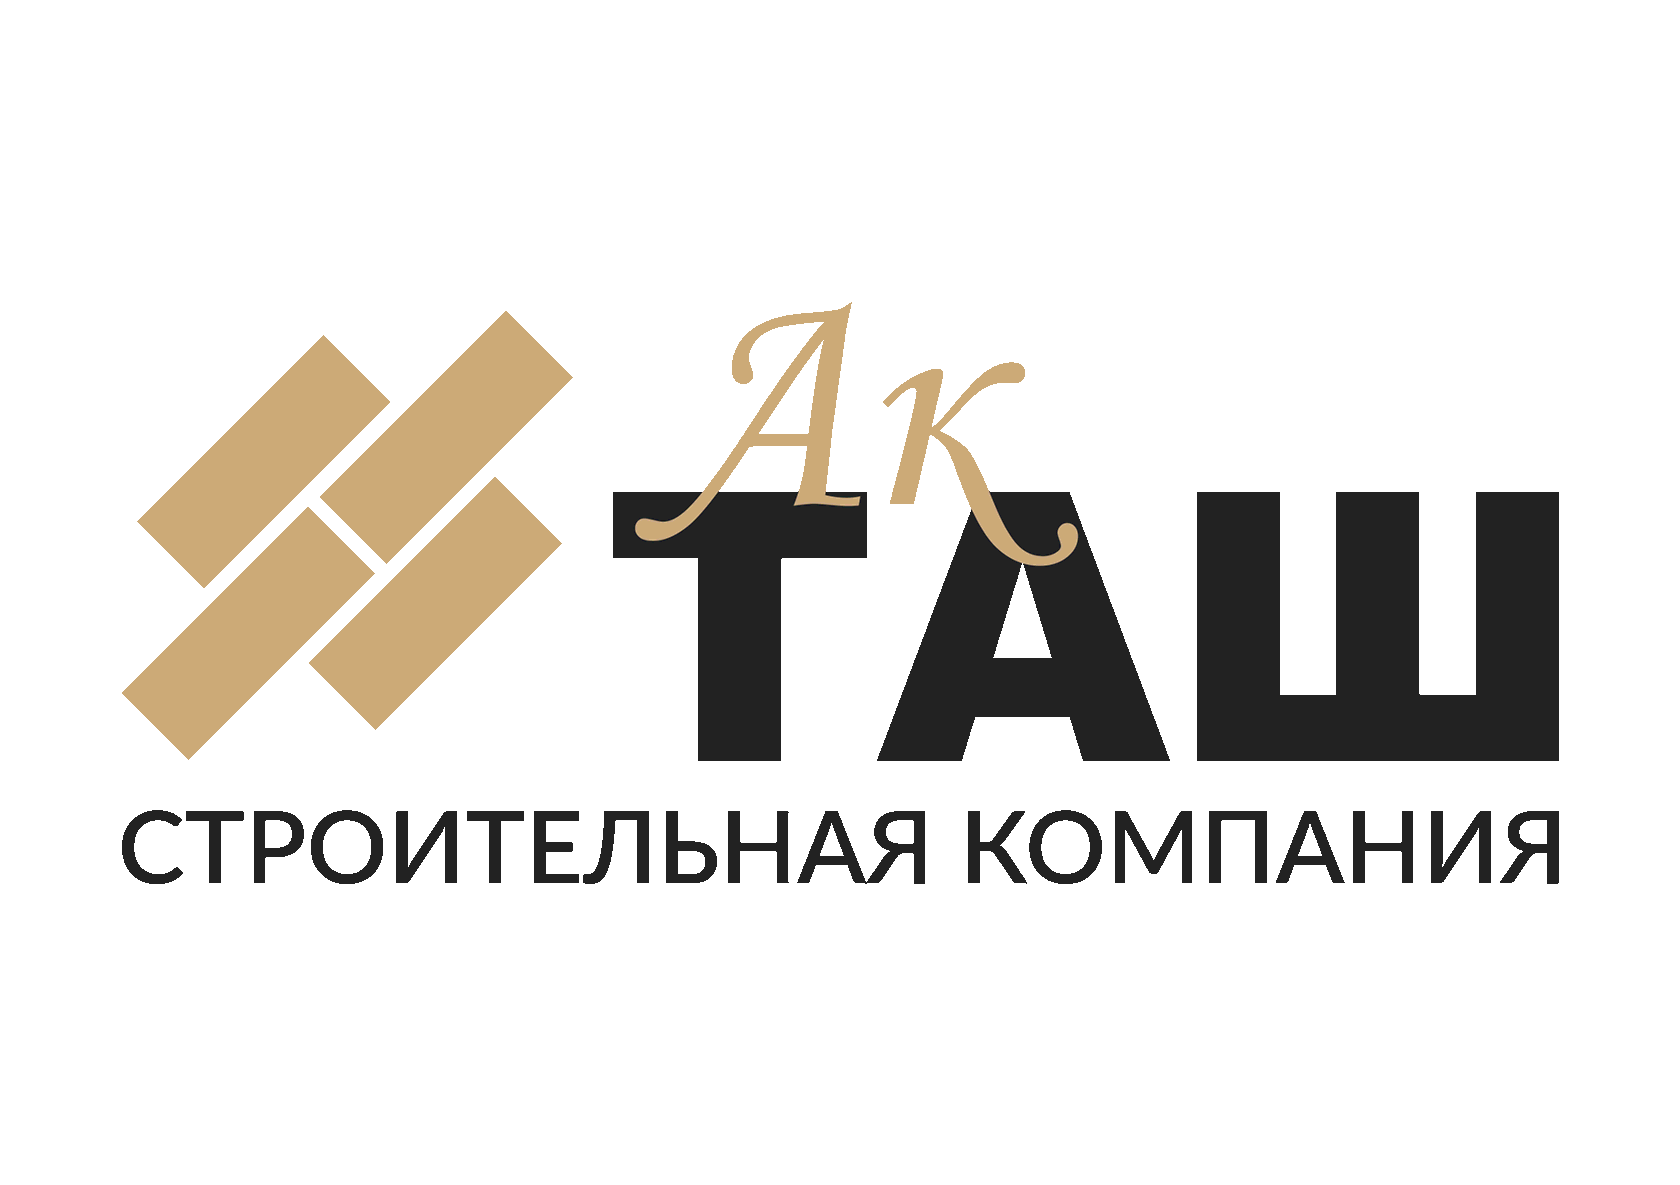 Строительные сайты казани. Логотип АК Таш. Строительная фирма Акташ. АК Таш строительная компания. Строительная компания АК Таш лого.